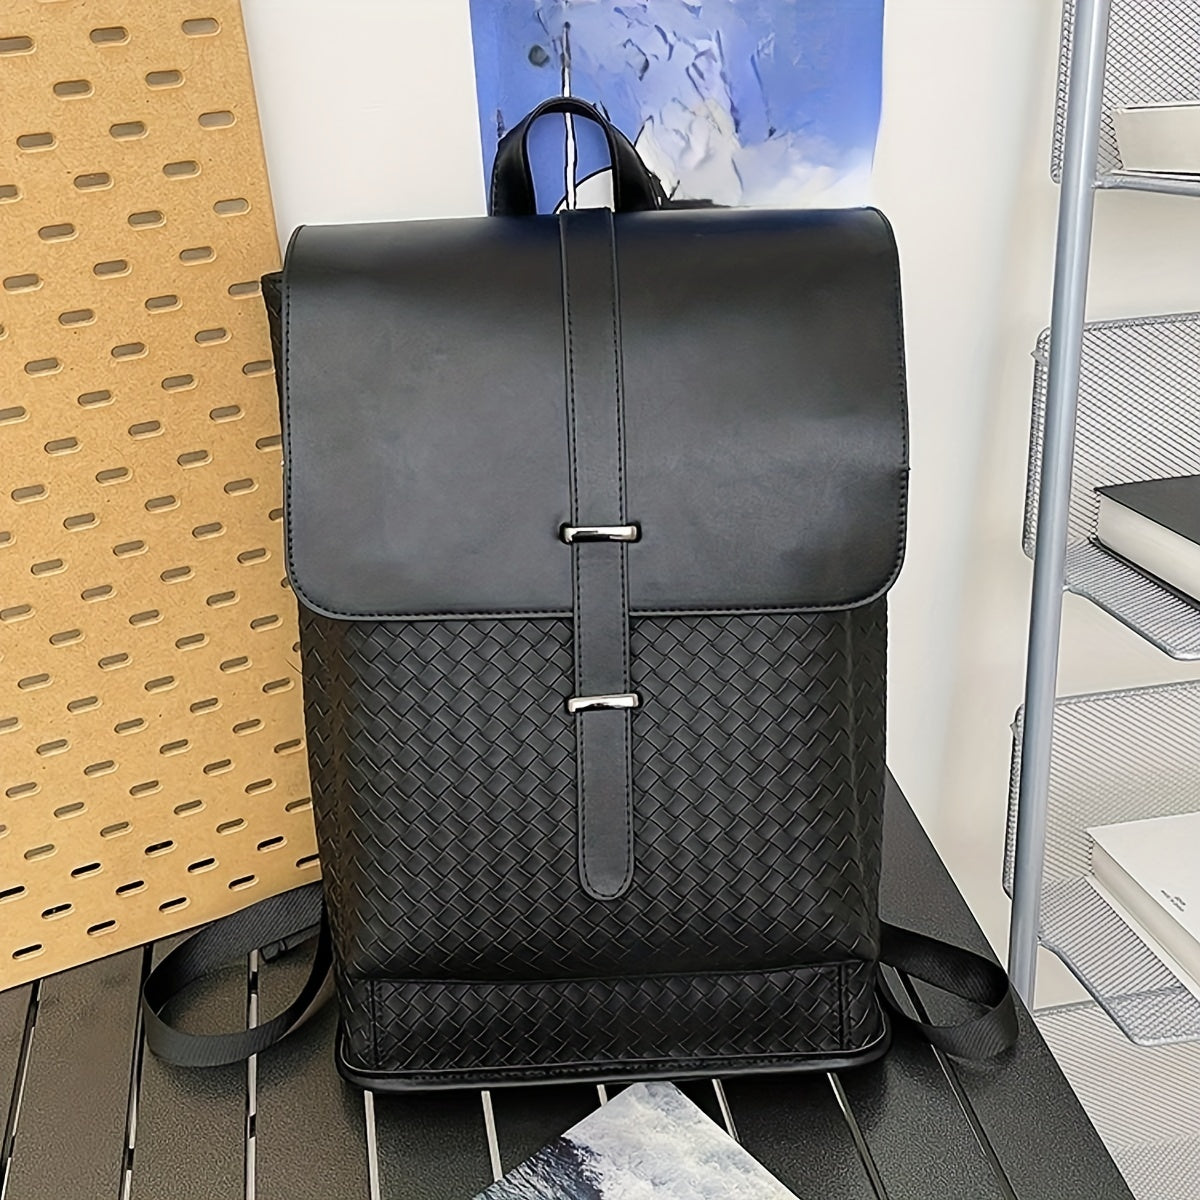 New Retro Backpack Men's Fashion Student School Bag Backpack Large Capacity Travel Computer Bag Single Shoulder Bag